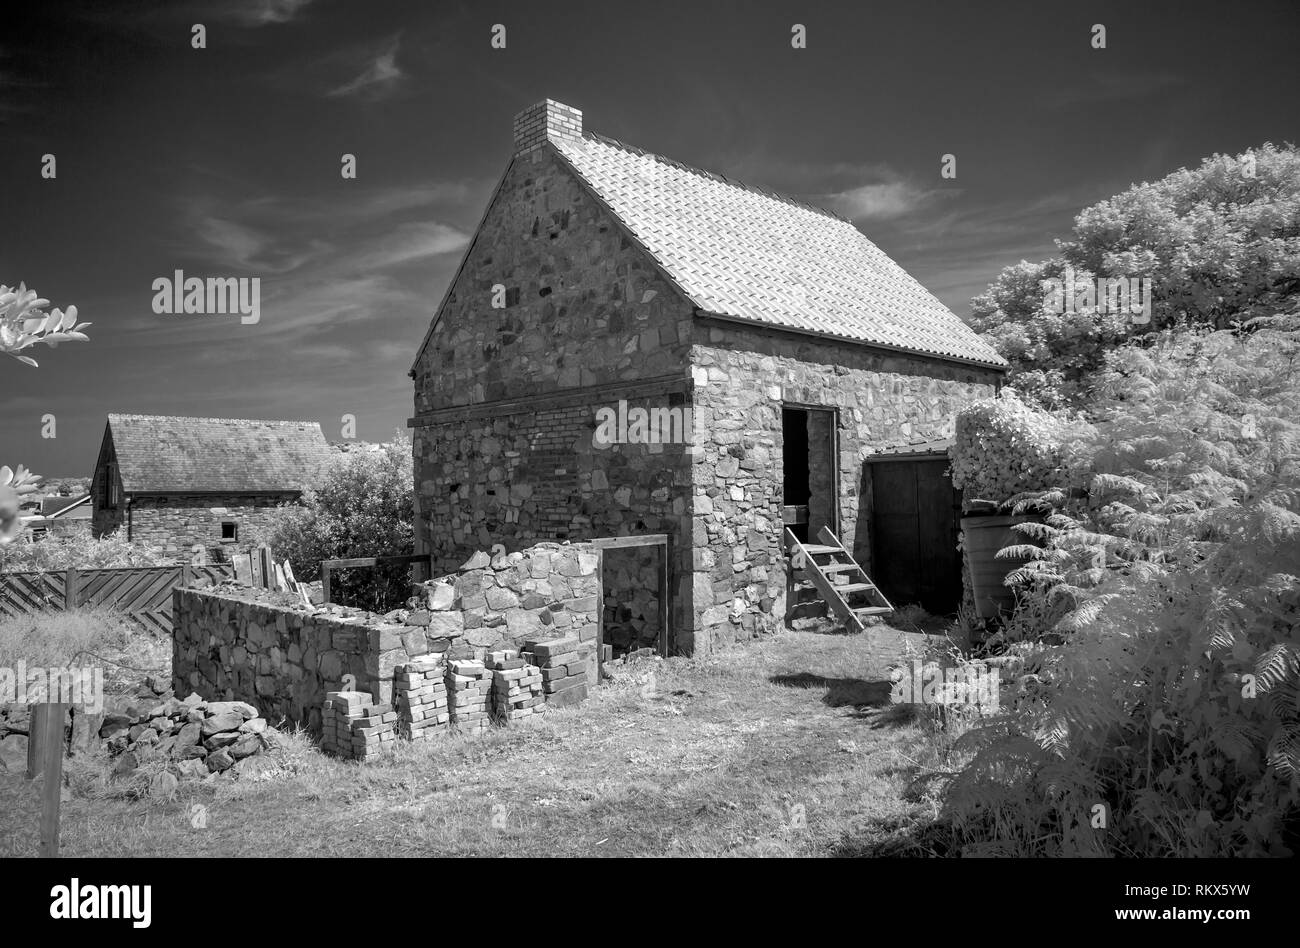 Une image monochrome infrarouge de l'ancien moulin à eau sur Alderney, Channel Islands. Banque D'Images